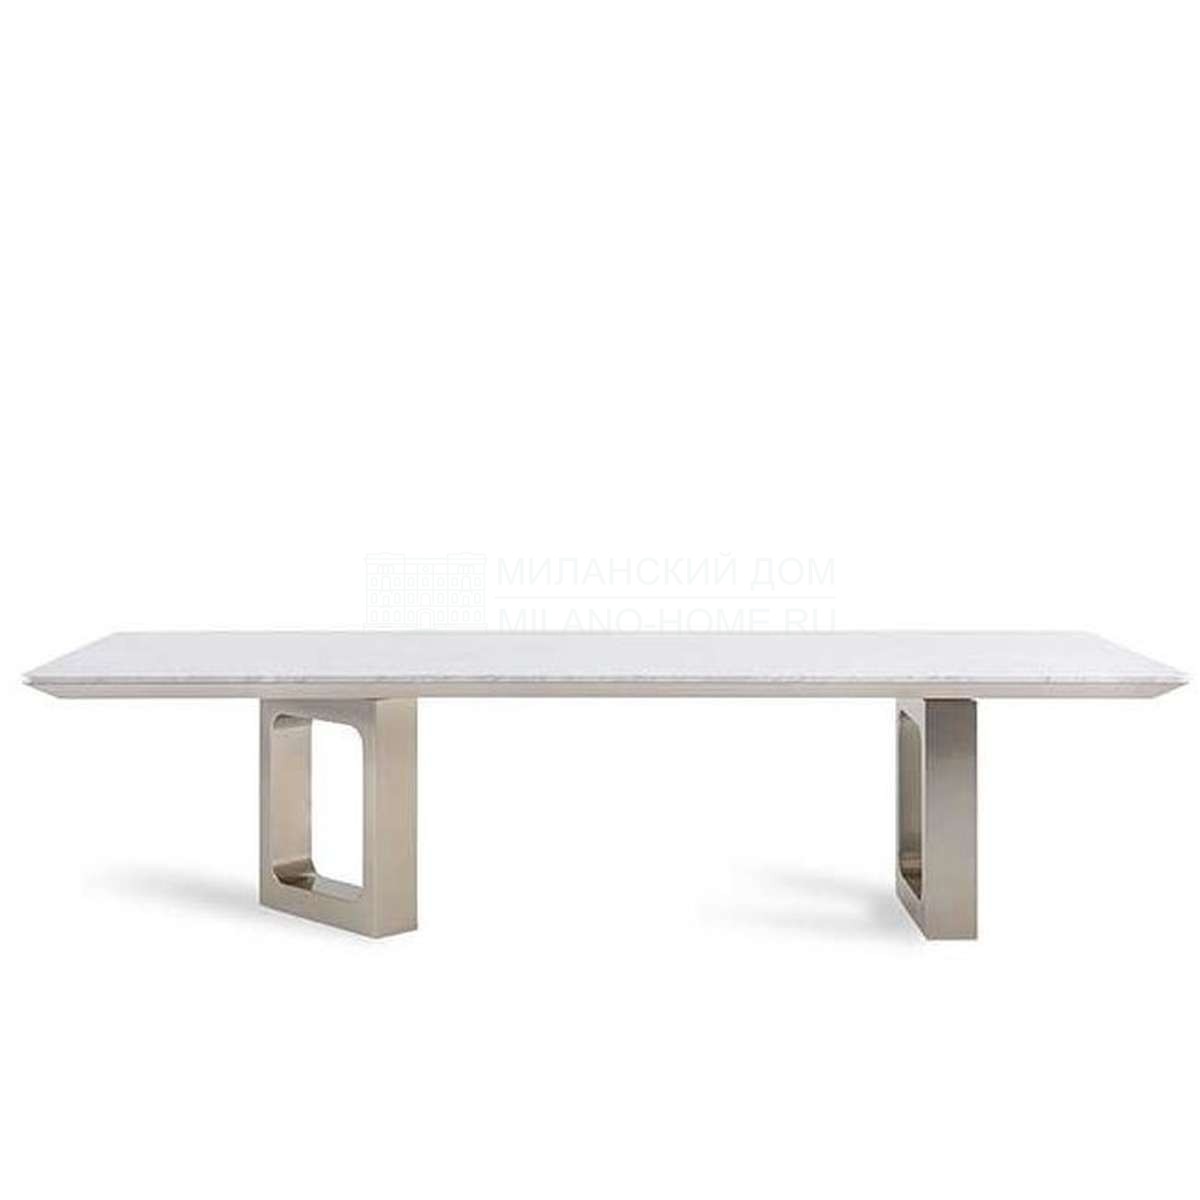 Обеденный стол Moore dining table из Италии фабрики FENDI Casa